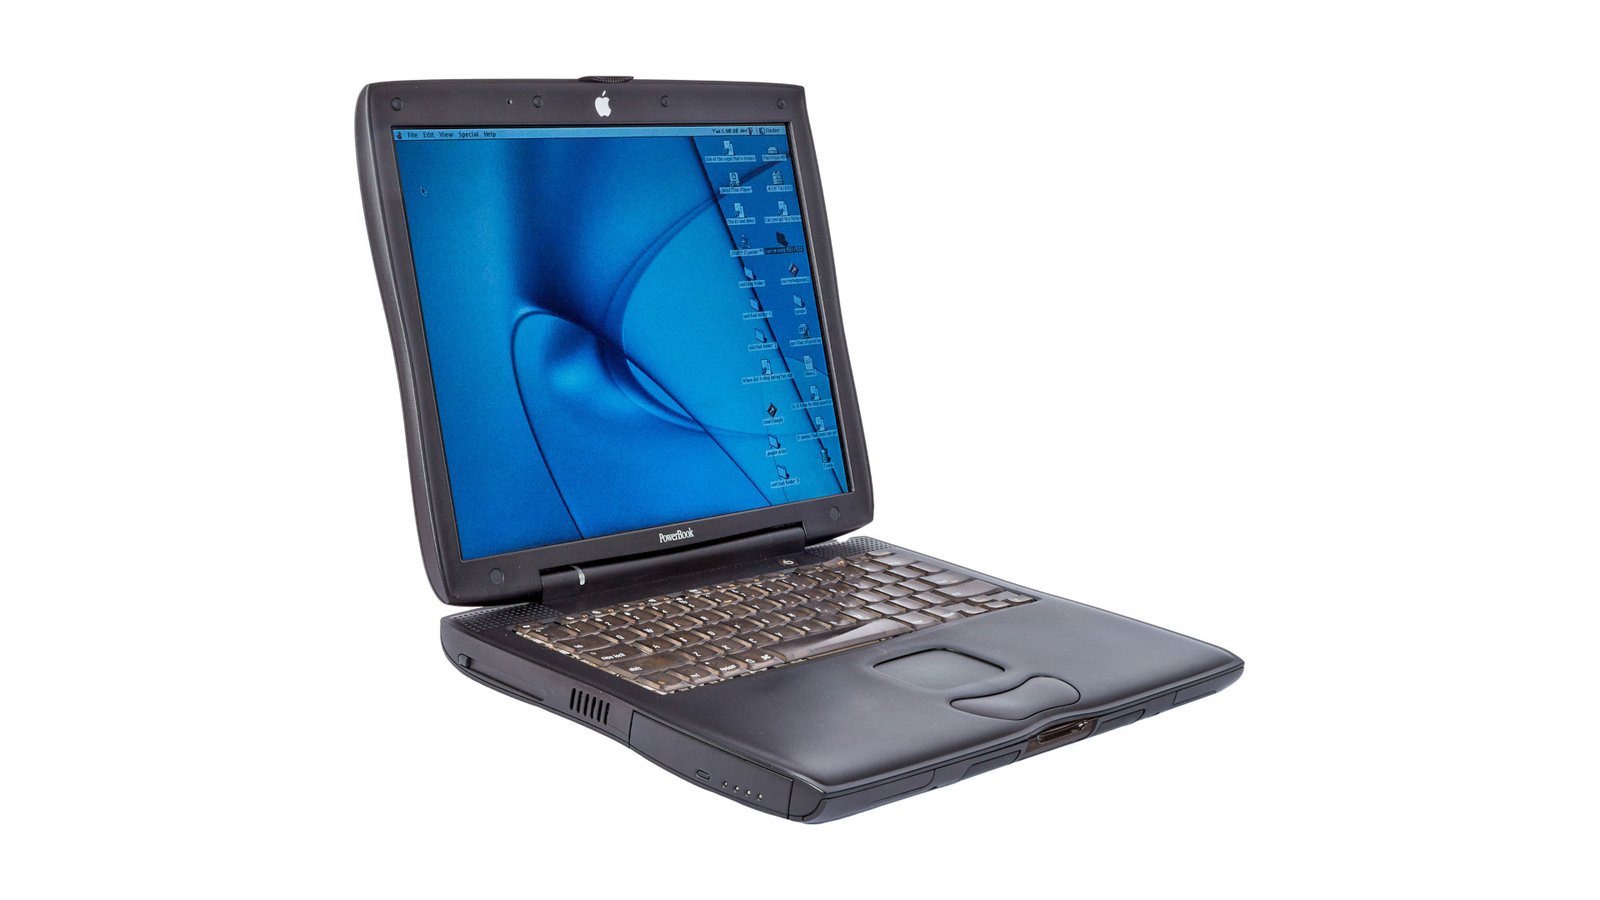 PowerBook G3 Pismo